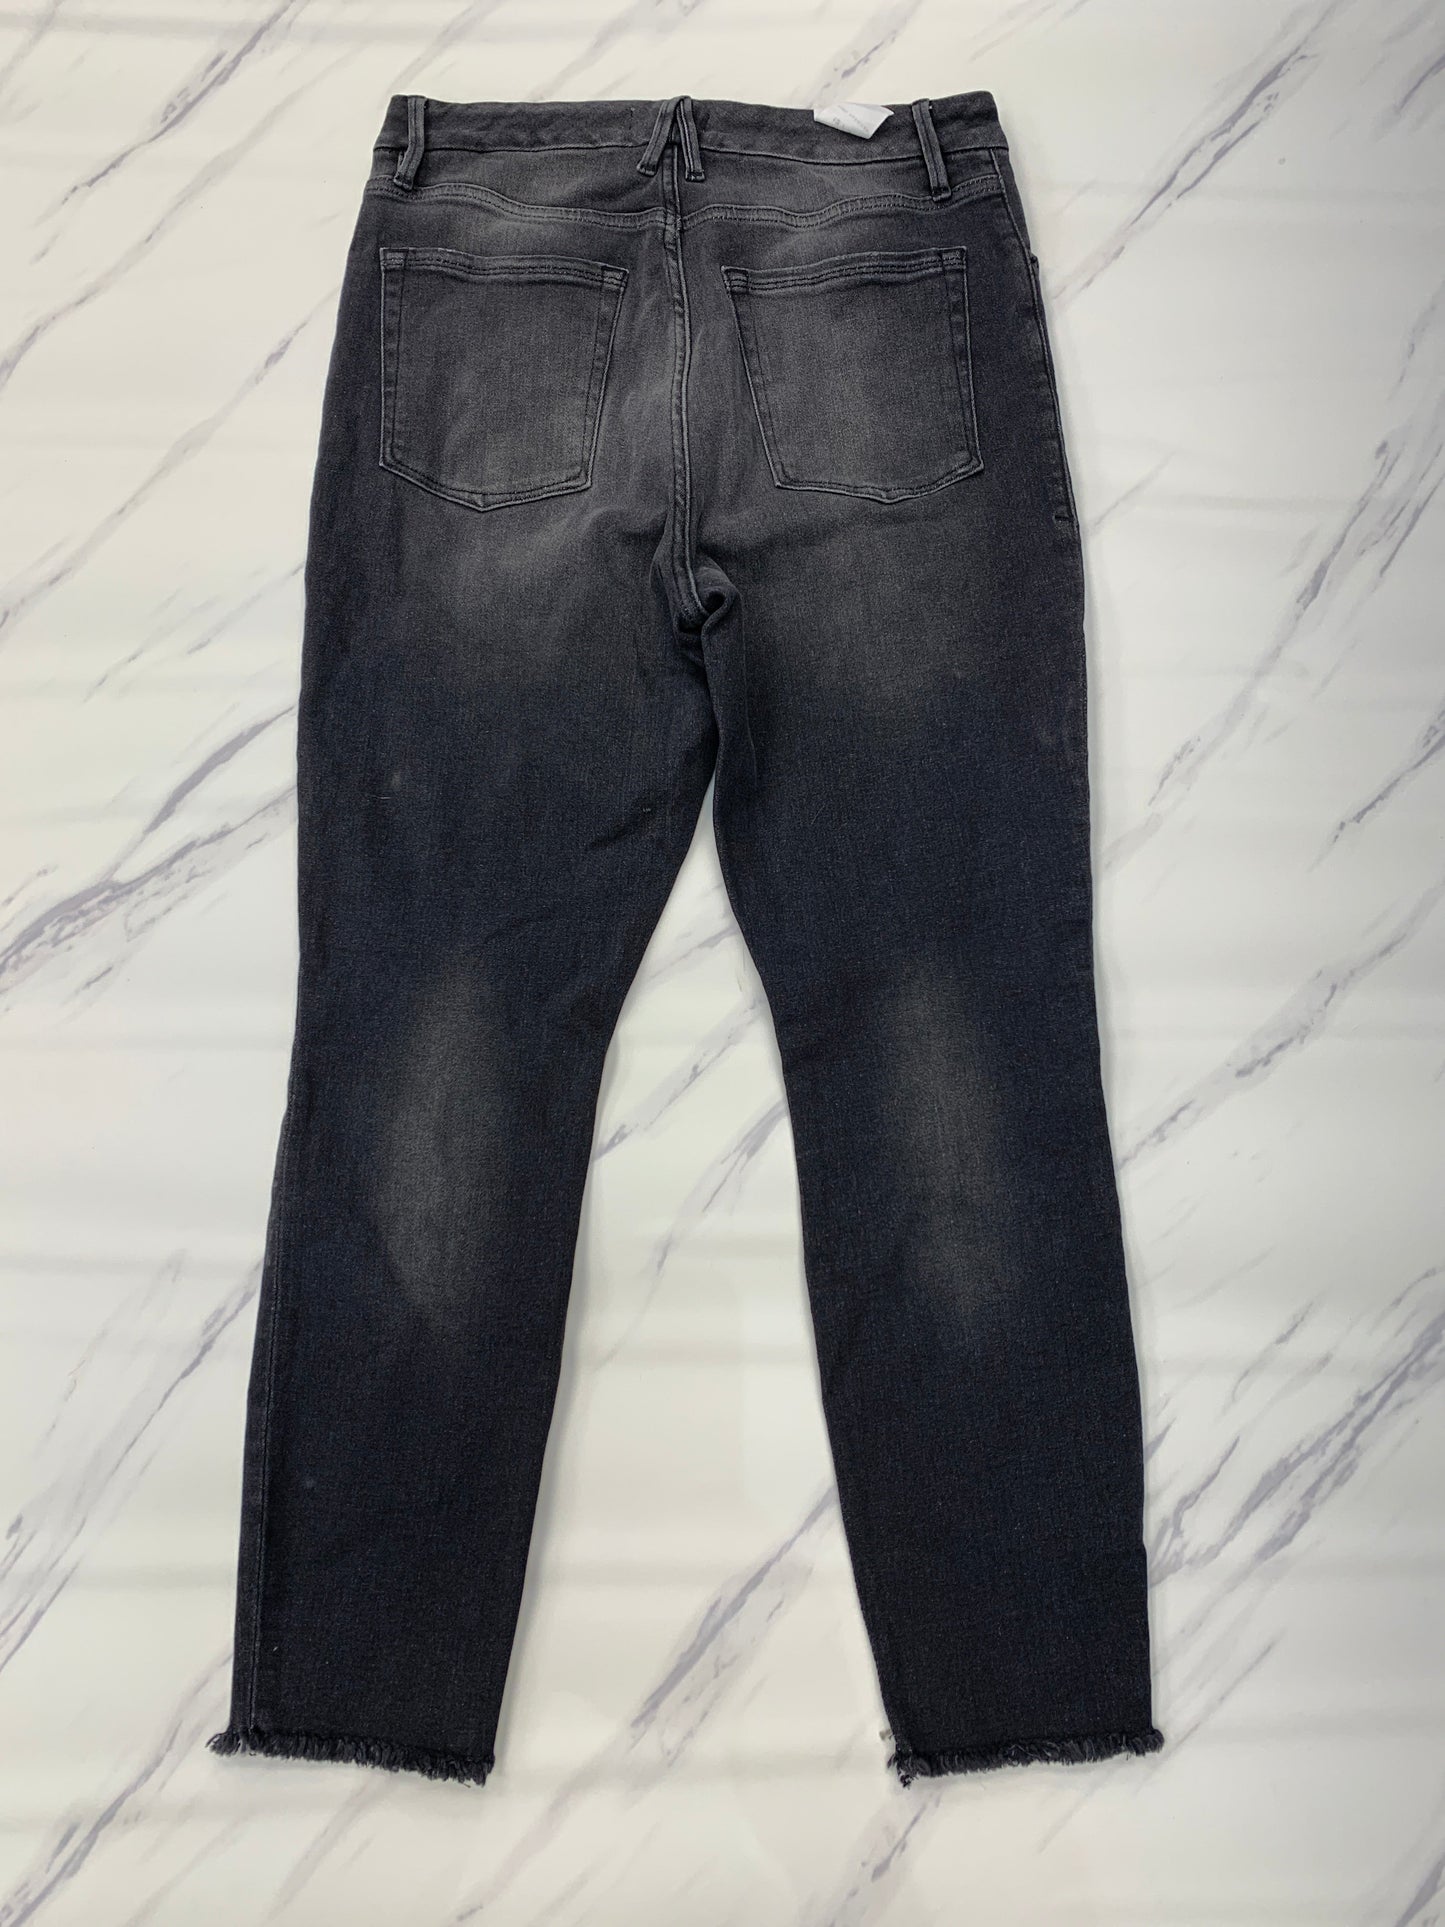 Black Jeans Designer Good American, Size 12